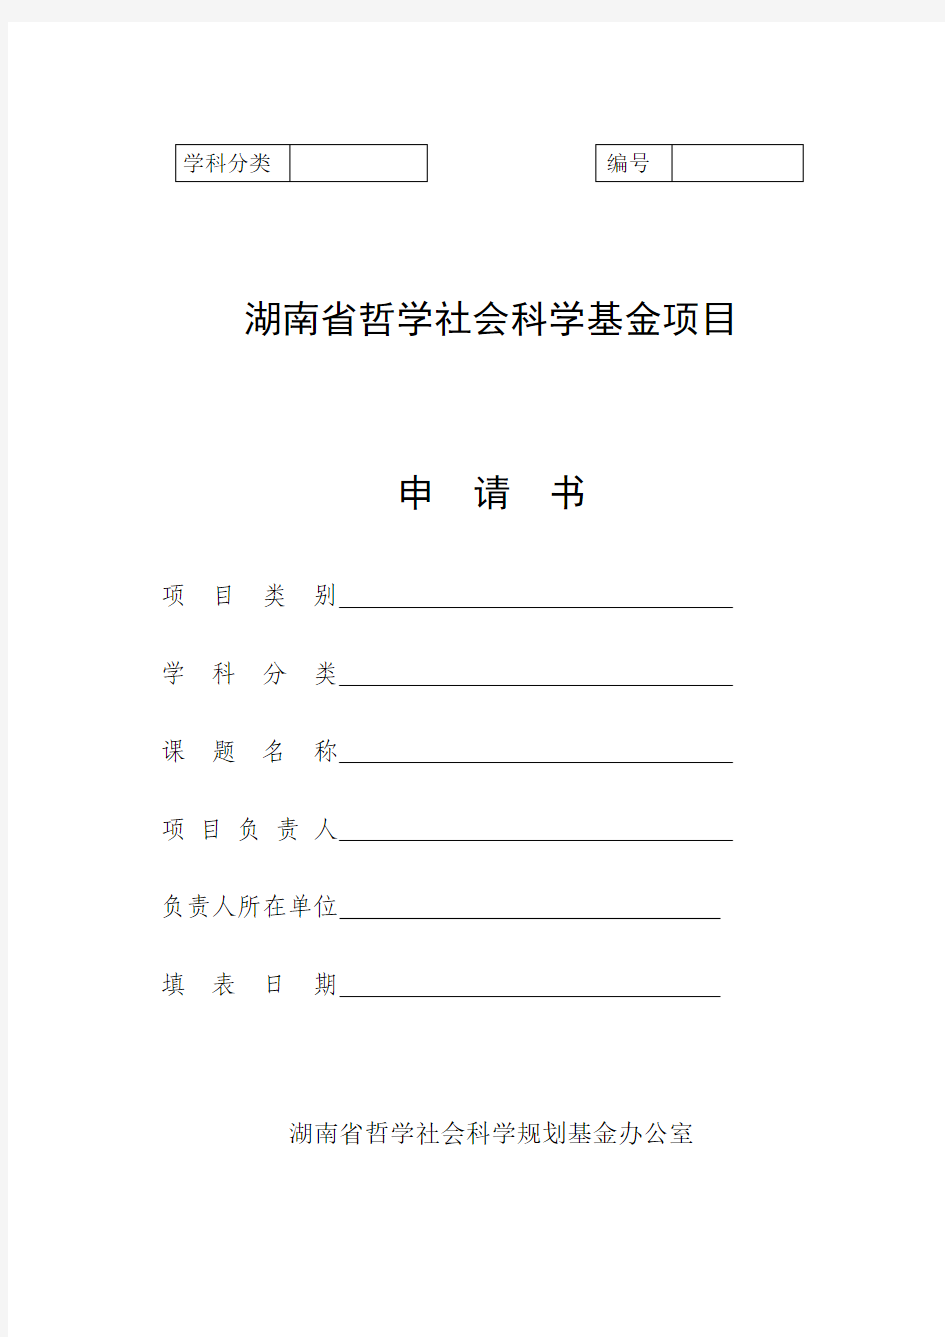 湖南省哲学社会科学基金项目申请书